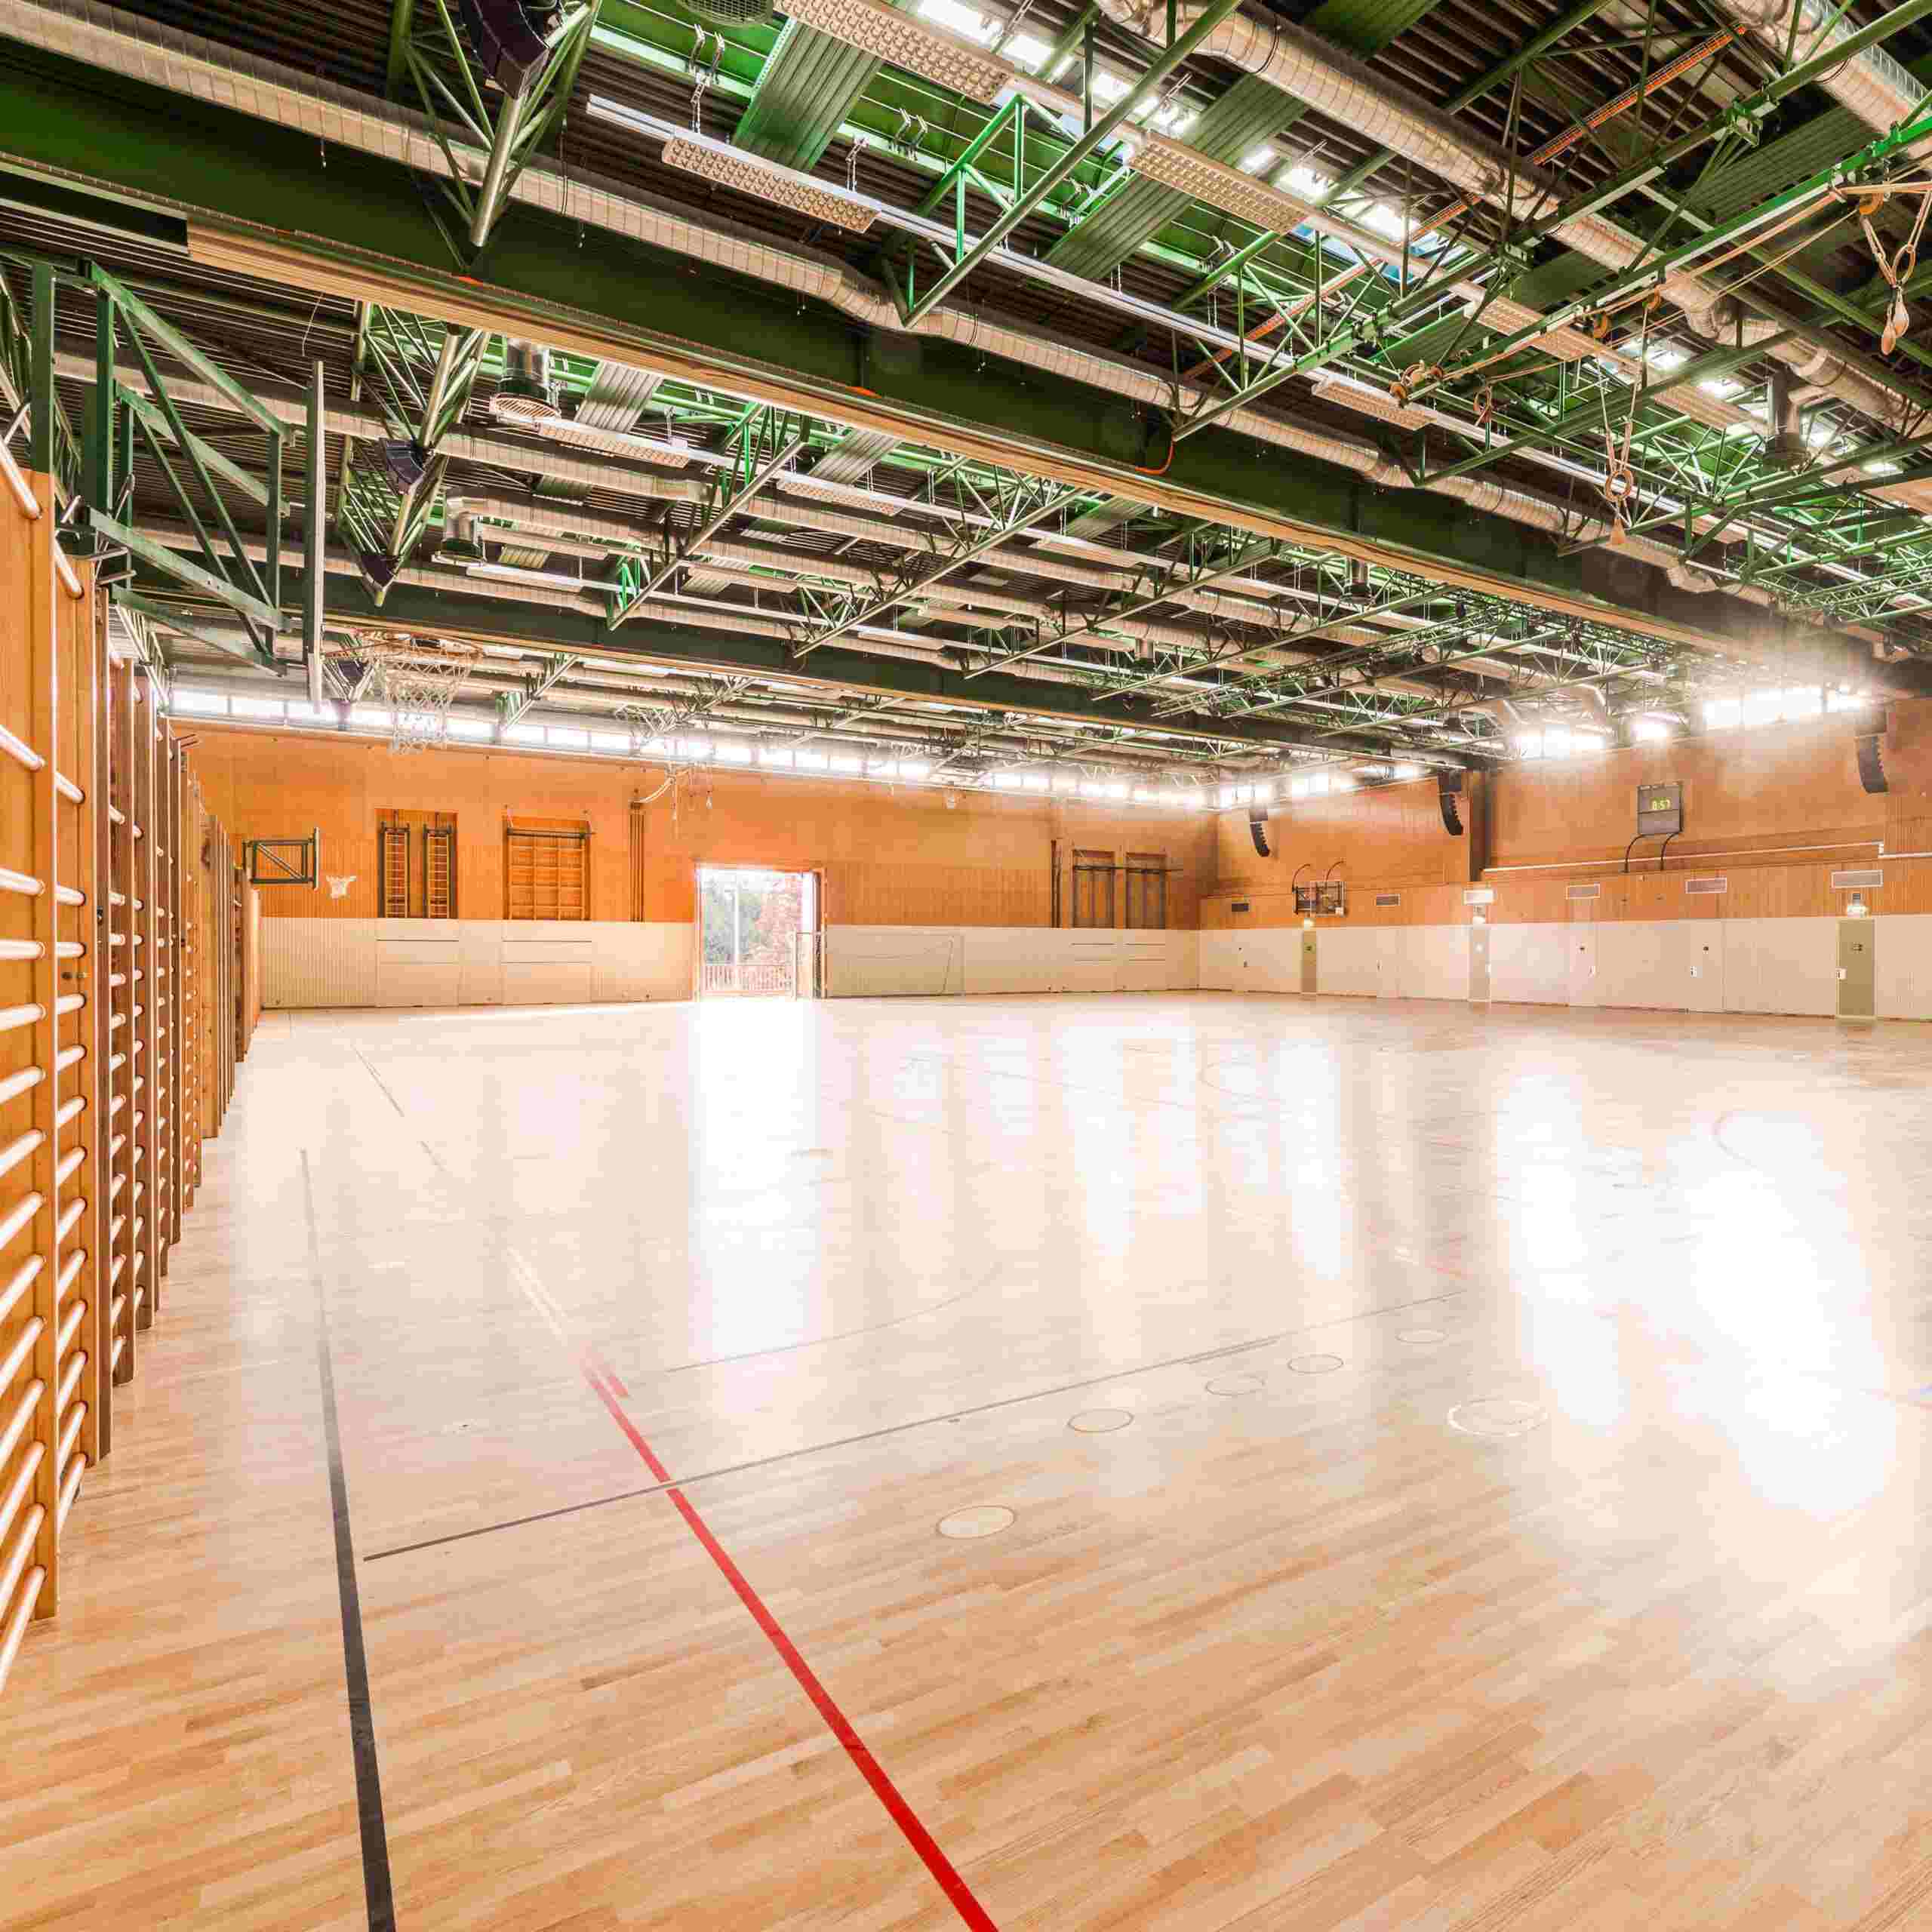 Bild zeigt große Turnhalle mit neu verlegtem Holzboden und Bodenbeklebung.